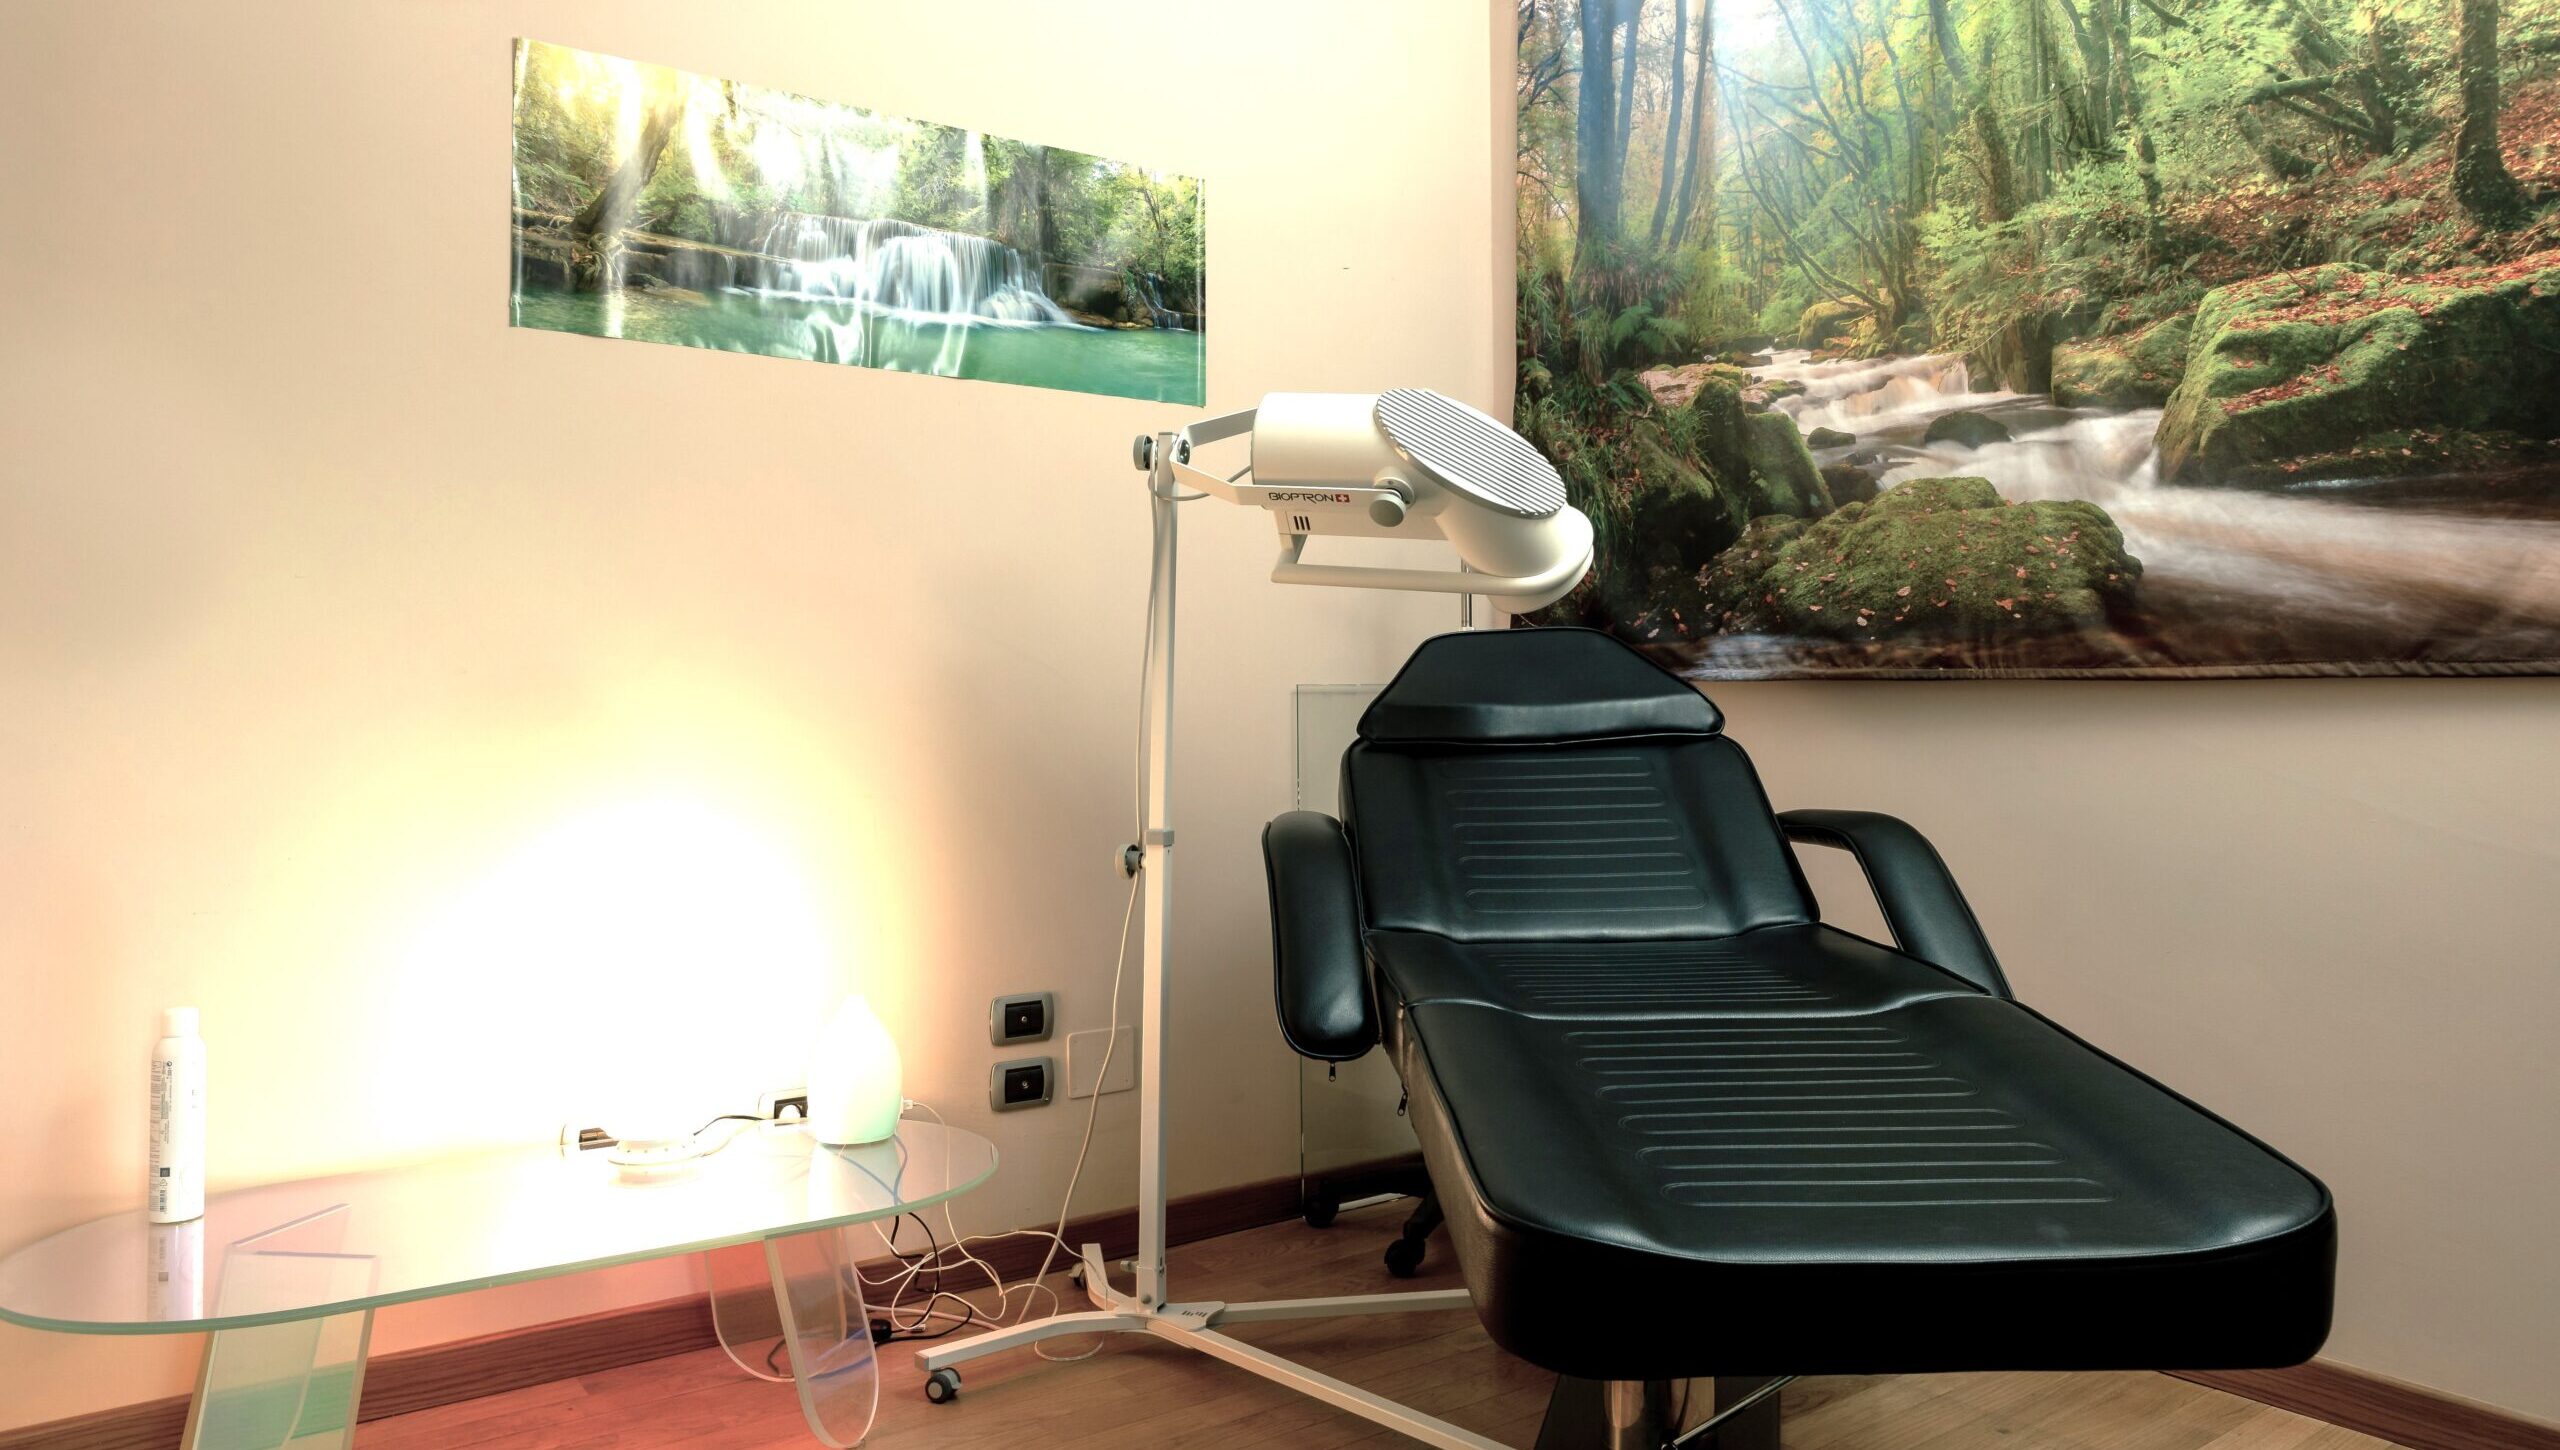 Studio Loro - Dentista Biella - Pedodonzia - Dentista Bambini - Ortodonzia - Implantologia - Sala relax